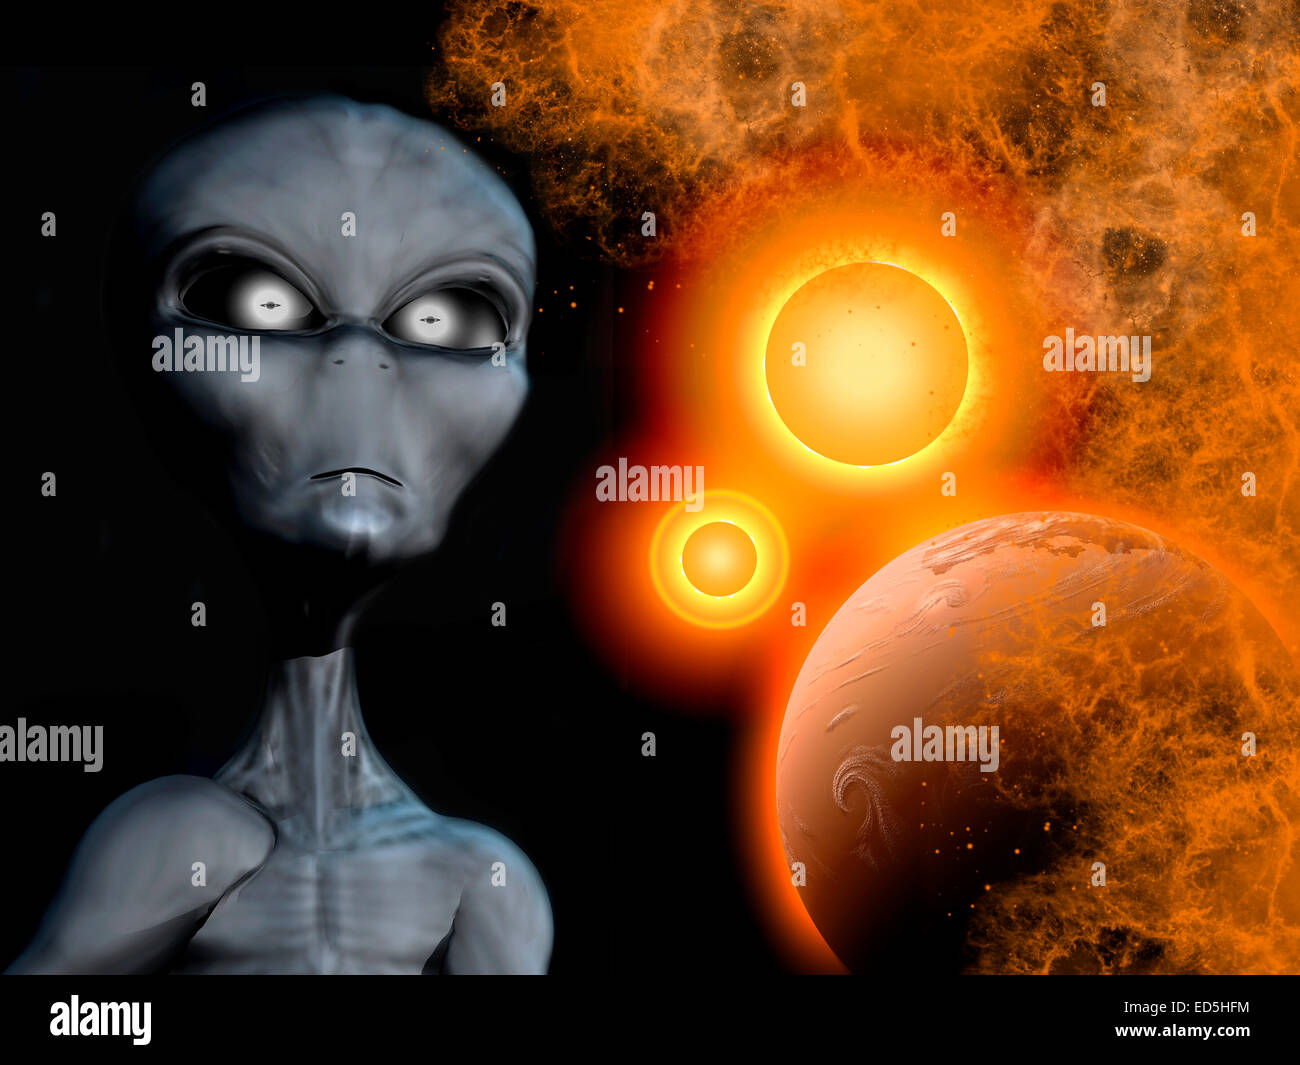 Eine graue Alien aus dem Sternensystem Zeta Reticuli. Stockfoto